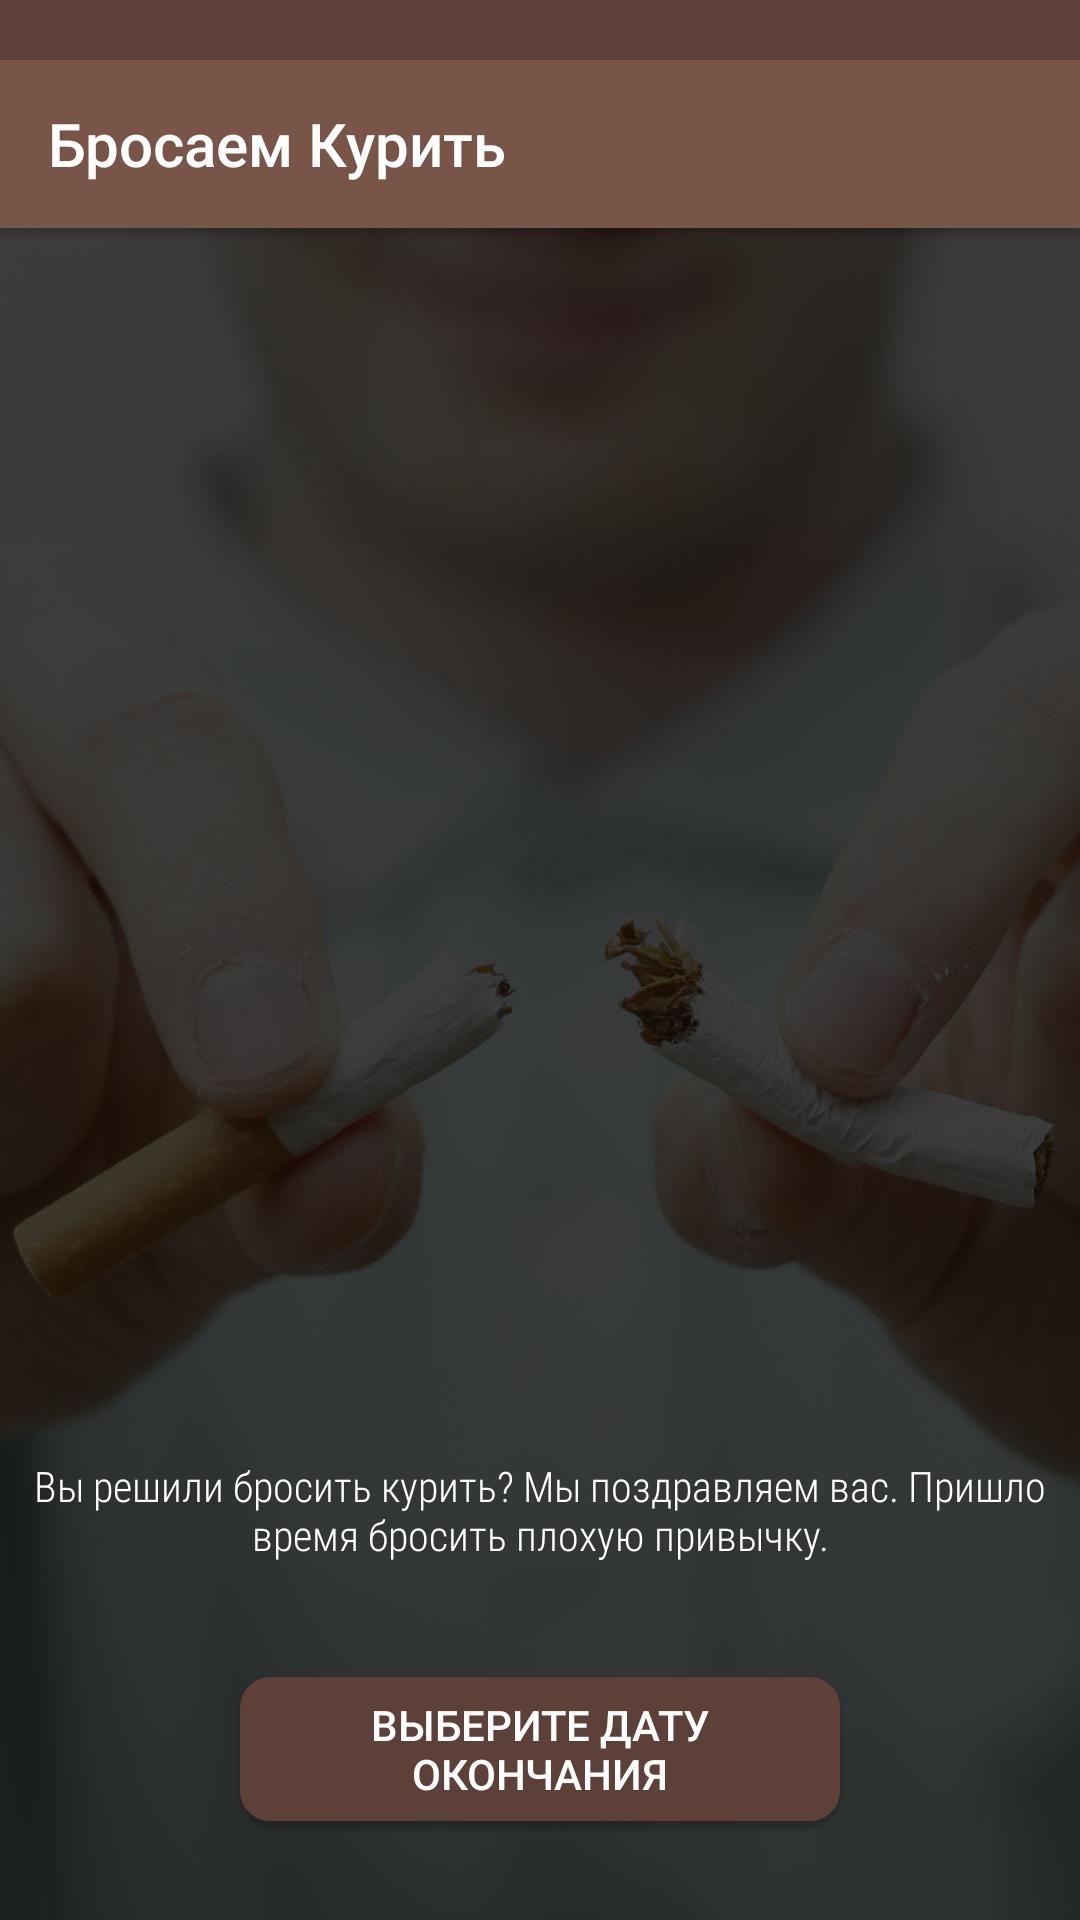 Бросить курить. «Бросить курить раз и навсегда». Брось курить раз и навсегда. Перестань курить. Бросить курить андроид